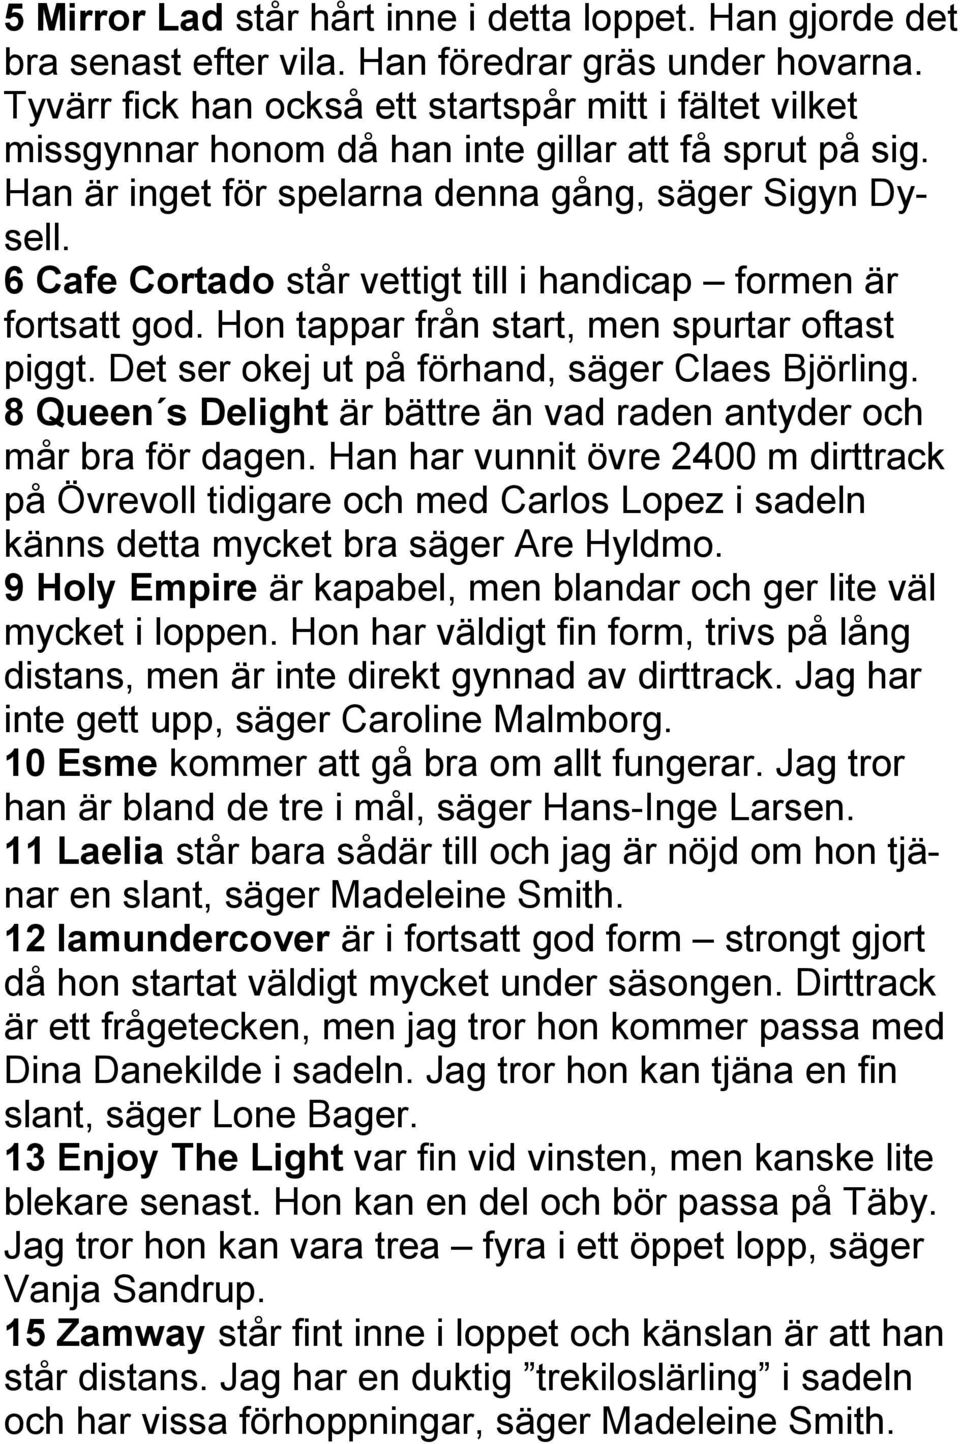 6 Cafe Cortado står vettigt till i handicap formen är fortsatt god. Hon tappar från start, men spurtar oftast piggt. Det ser okej ut på förhand, säger Claes Björling.